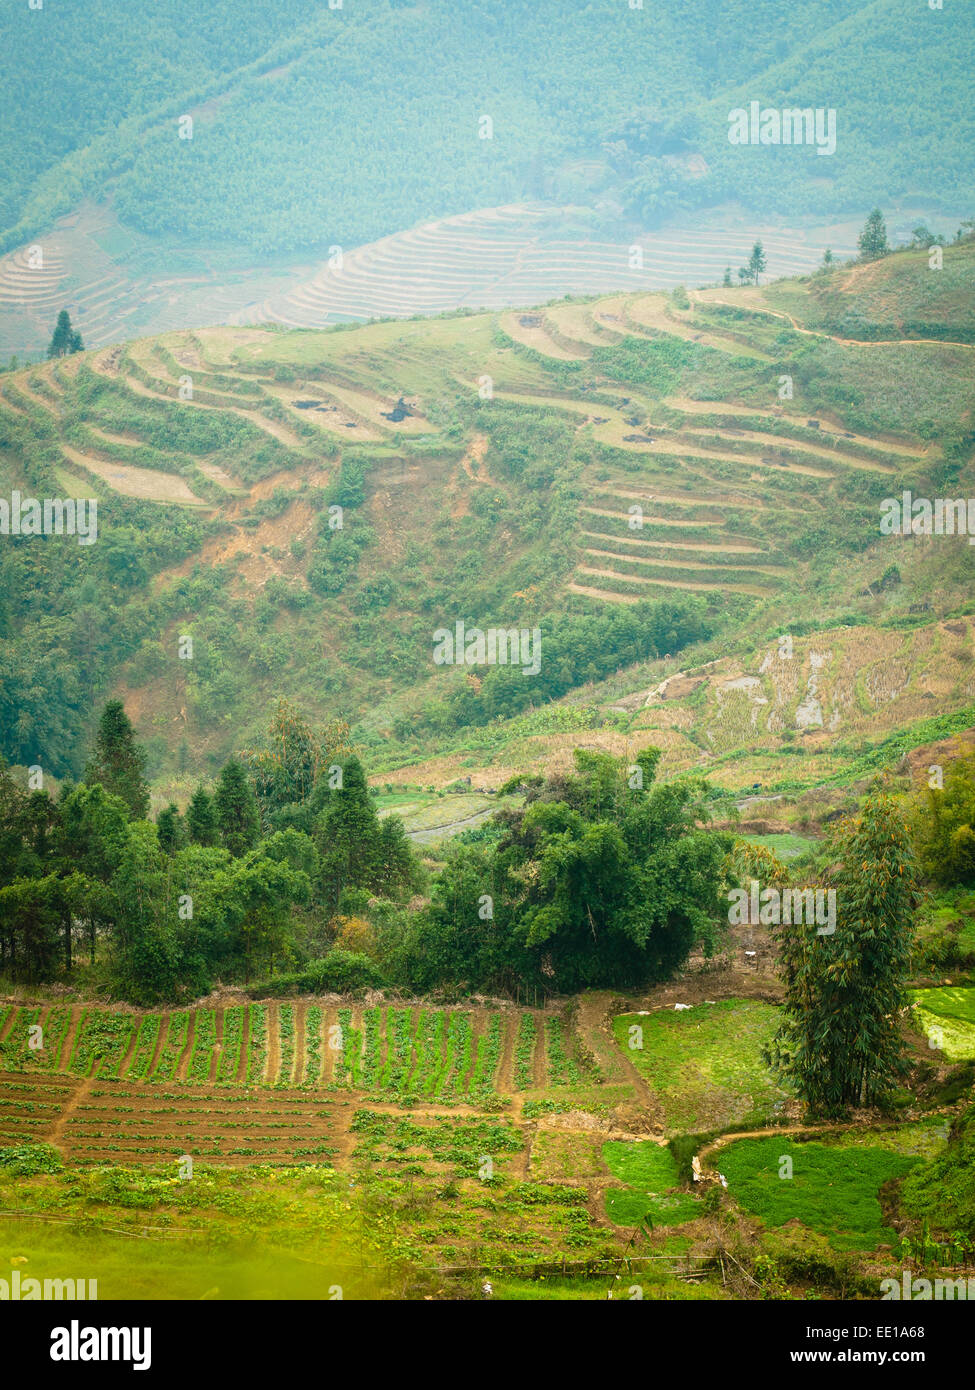 Ein Blick auf Felder und terrassierten Reisfelder etwas außerhalb von Sapa, Vietnam. Stockfoto